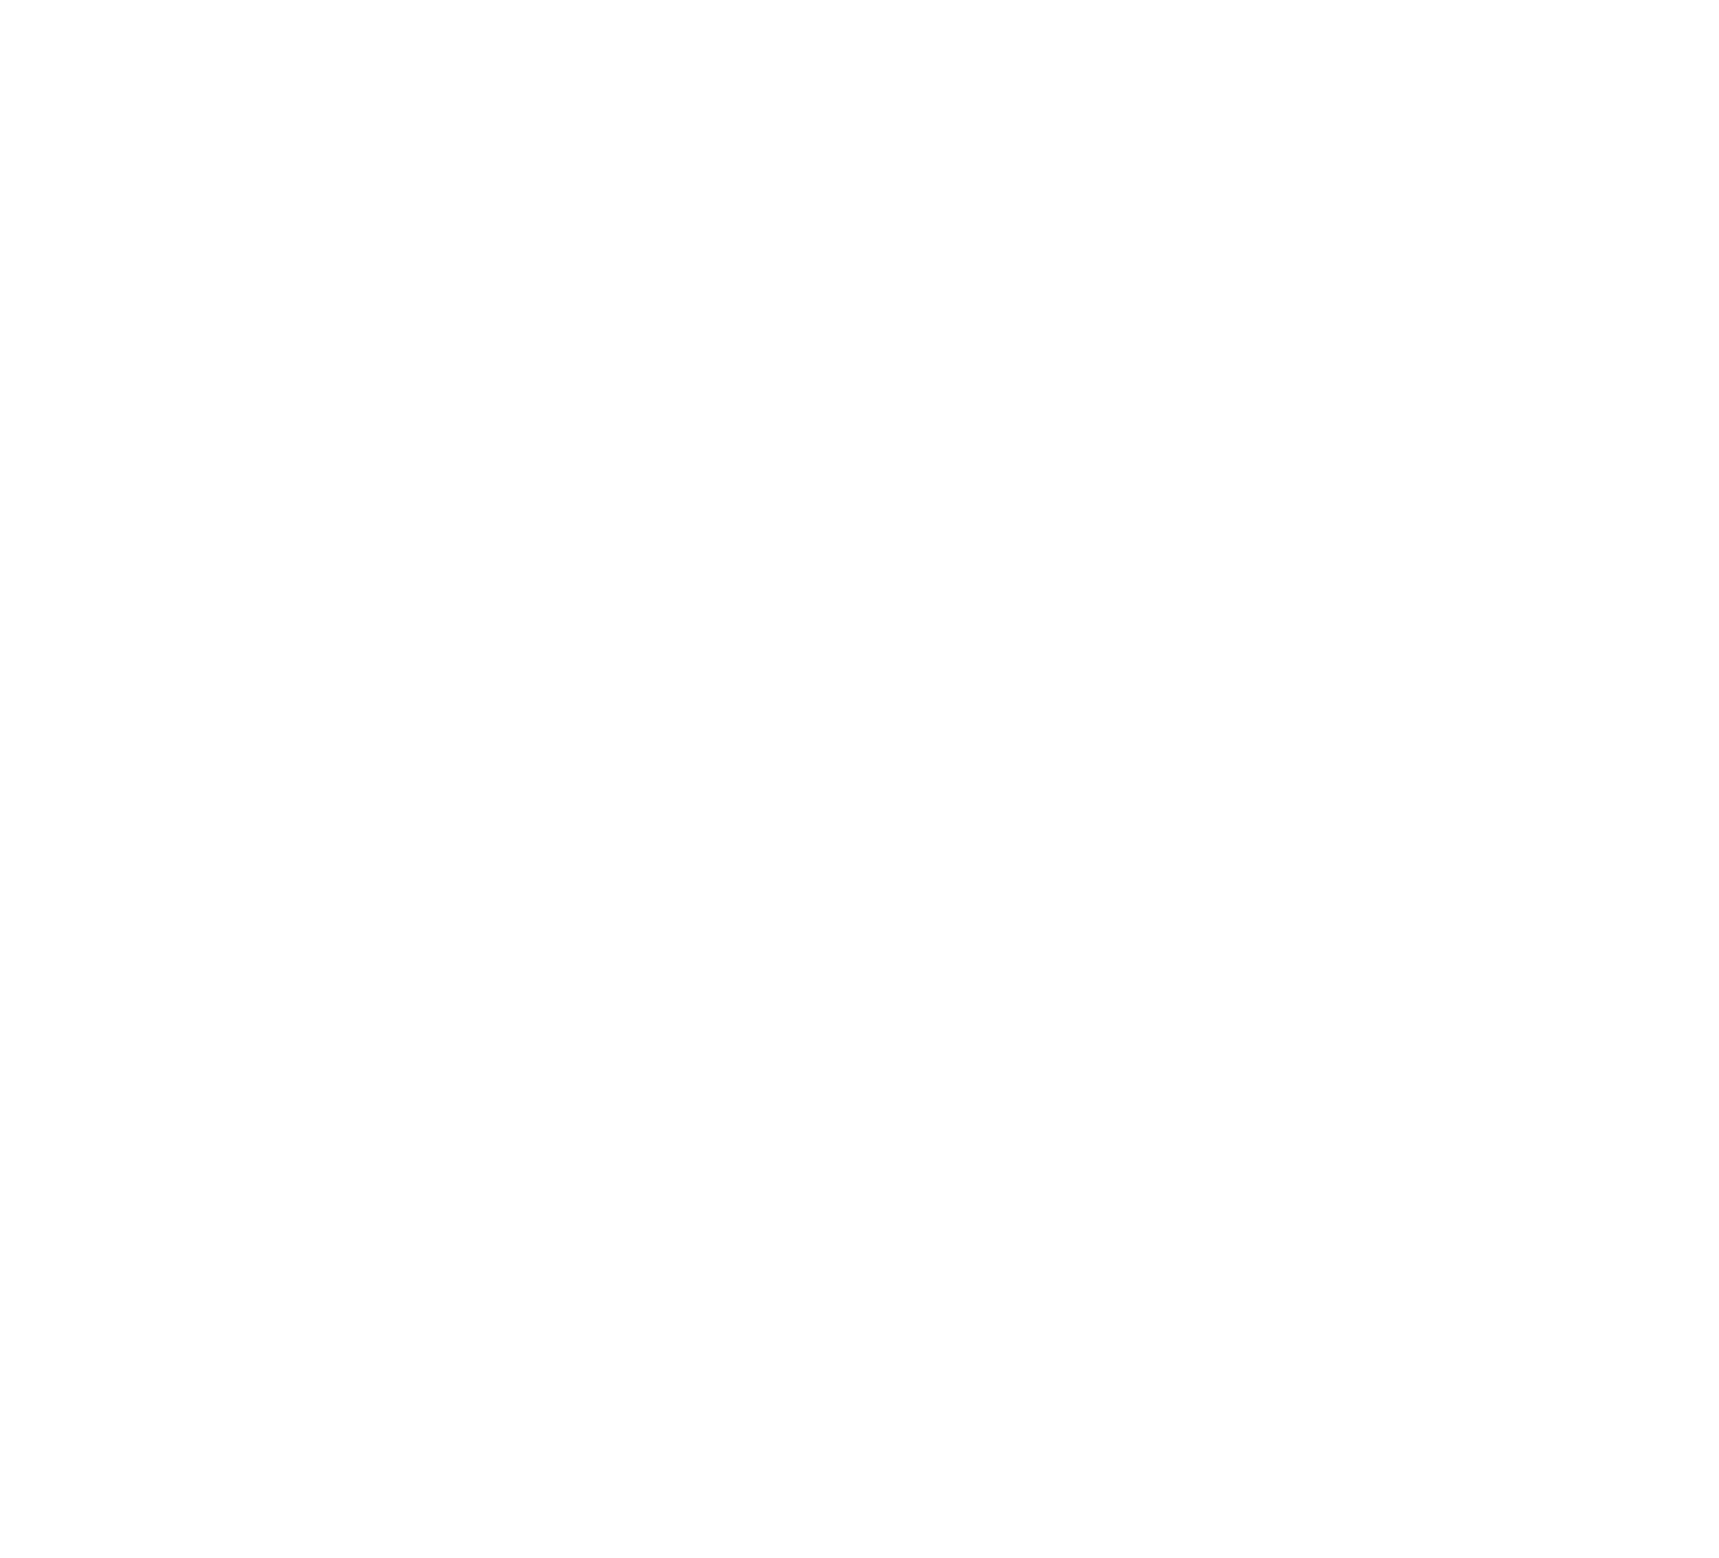 Nivatus